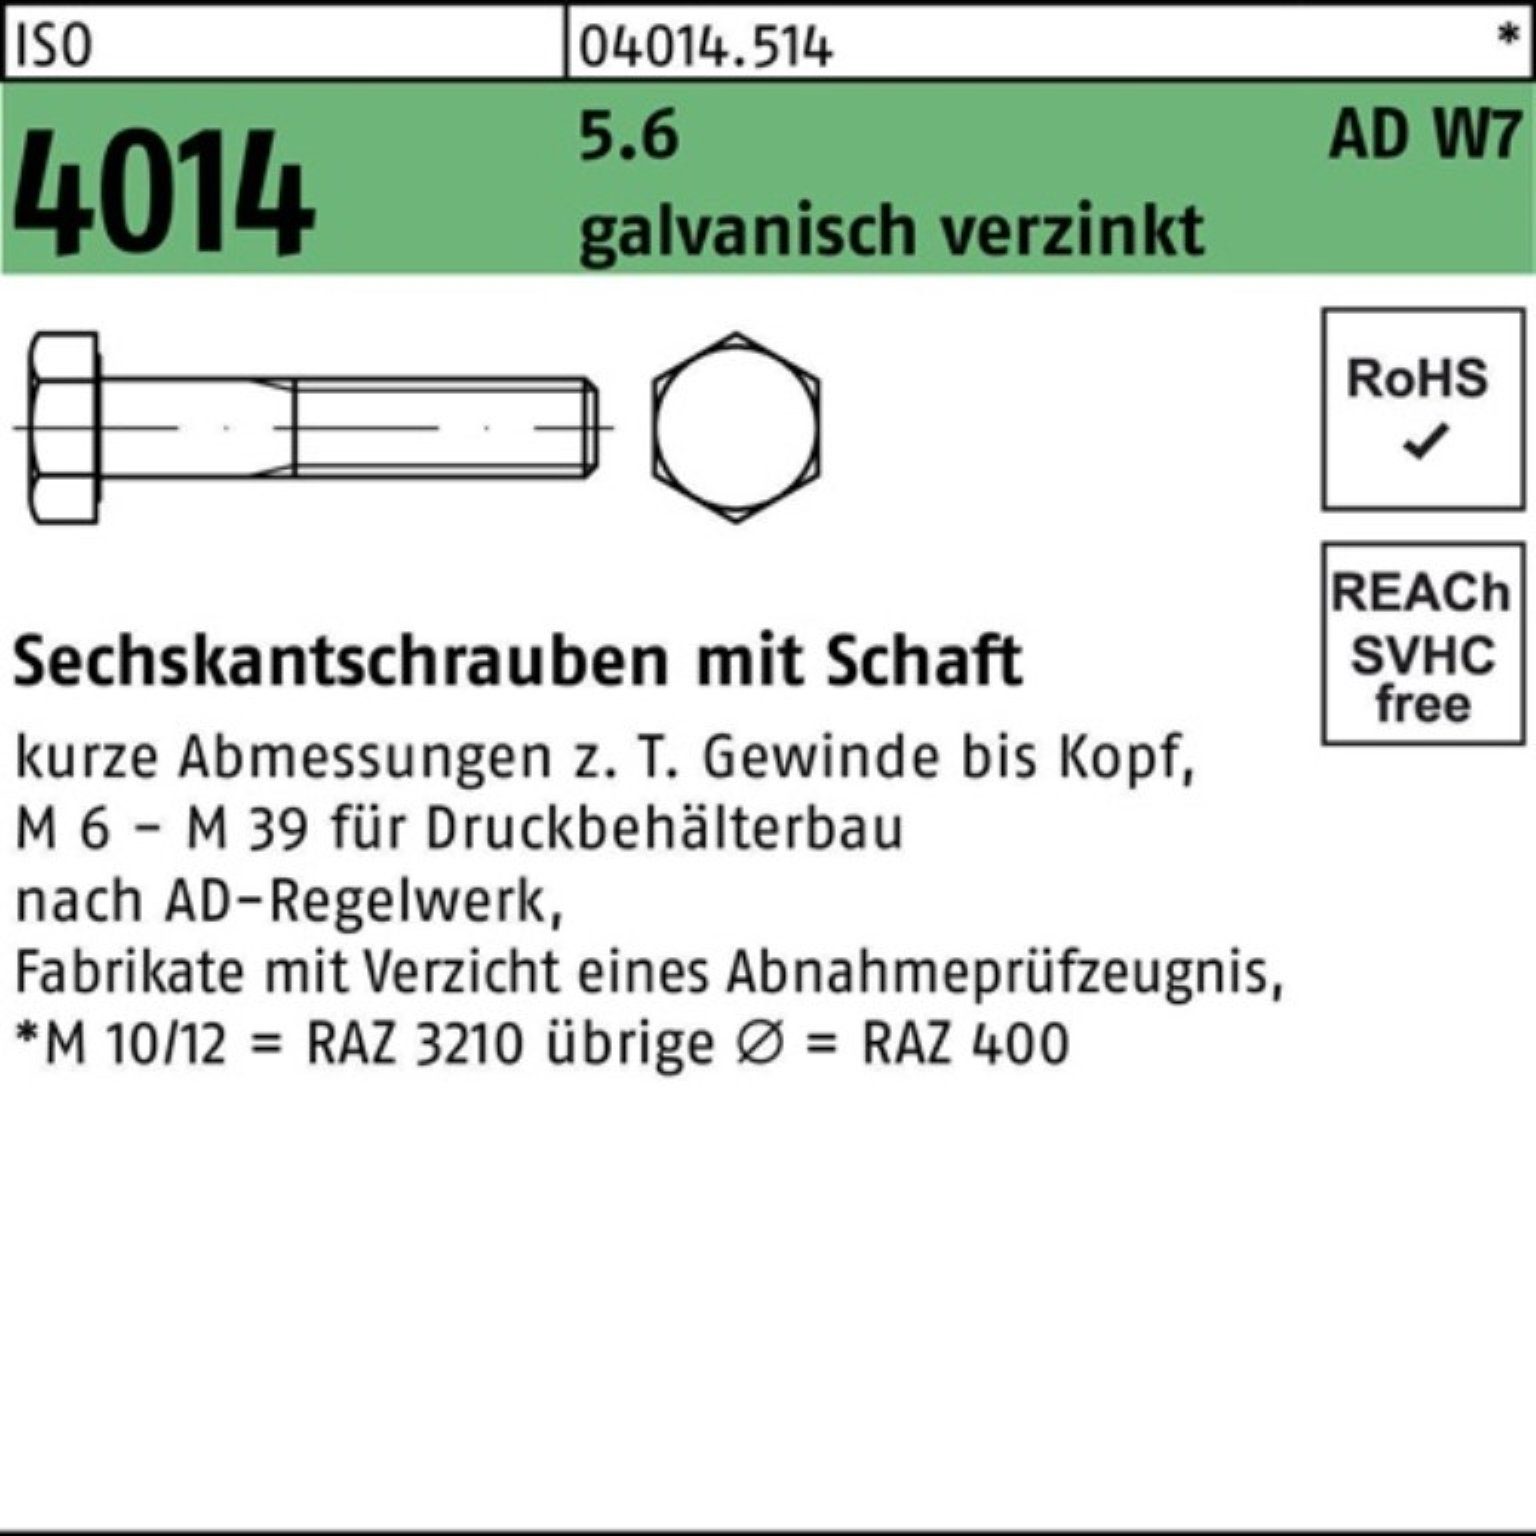 Sechskantschraube 100er 200 4014 5.6 M30x W7 Bufab Pack ISO galv.verz Sechskantschraube Schaft